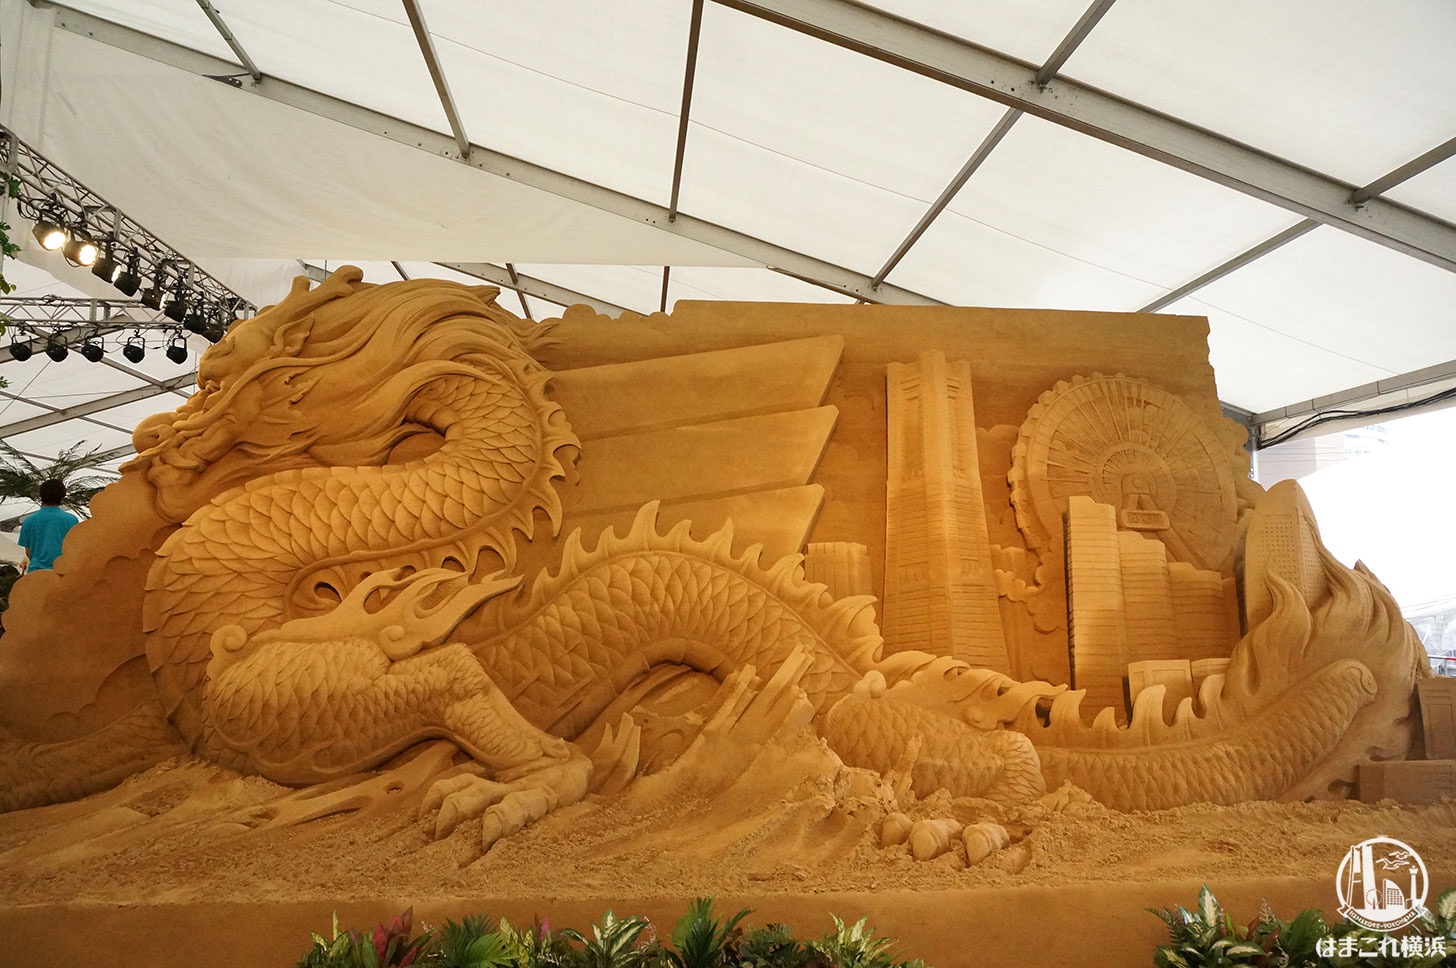 ヨコハマ砂の彫刻展の砂で作った彫刻が想像の100倍凄くて超感動！期間限定イベント